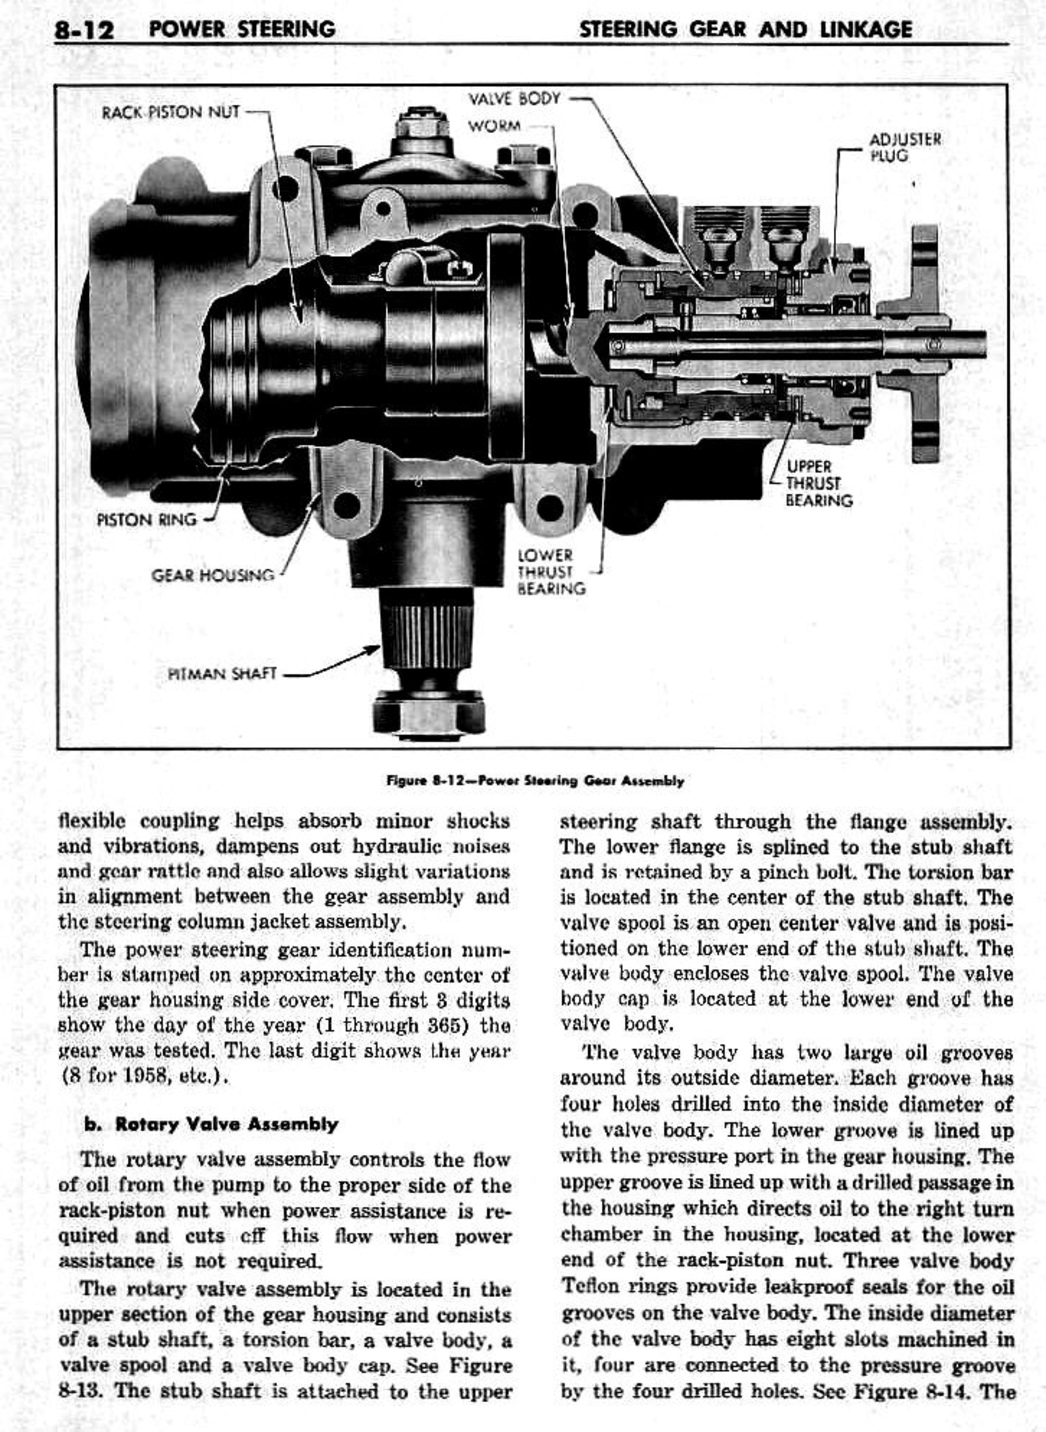 n_09 1959 Buick Shop Manual - Steering-012-012.jpg